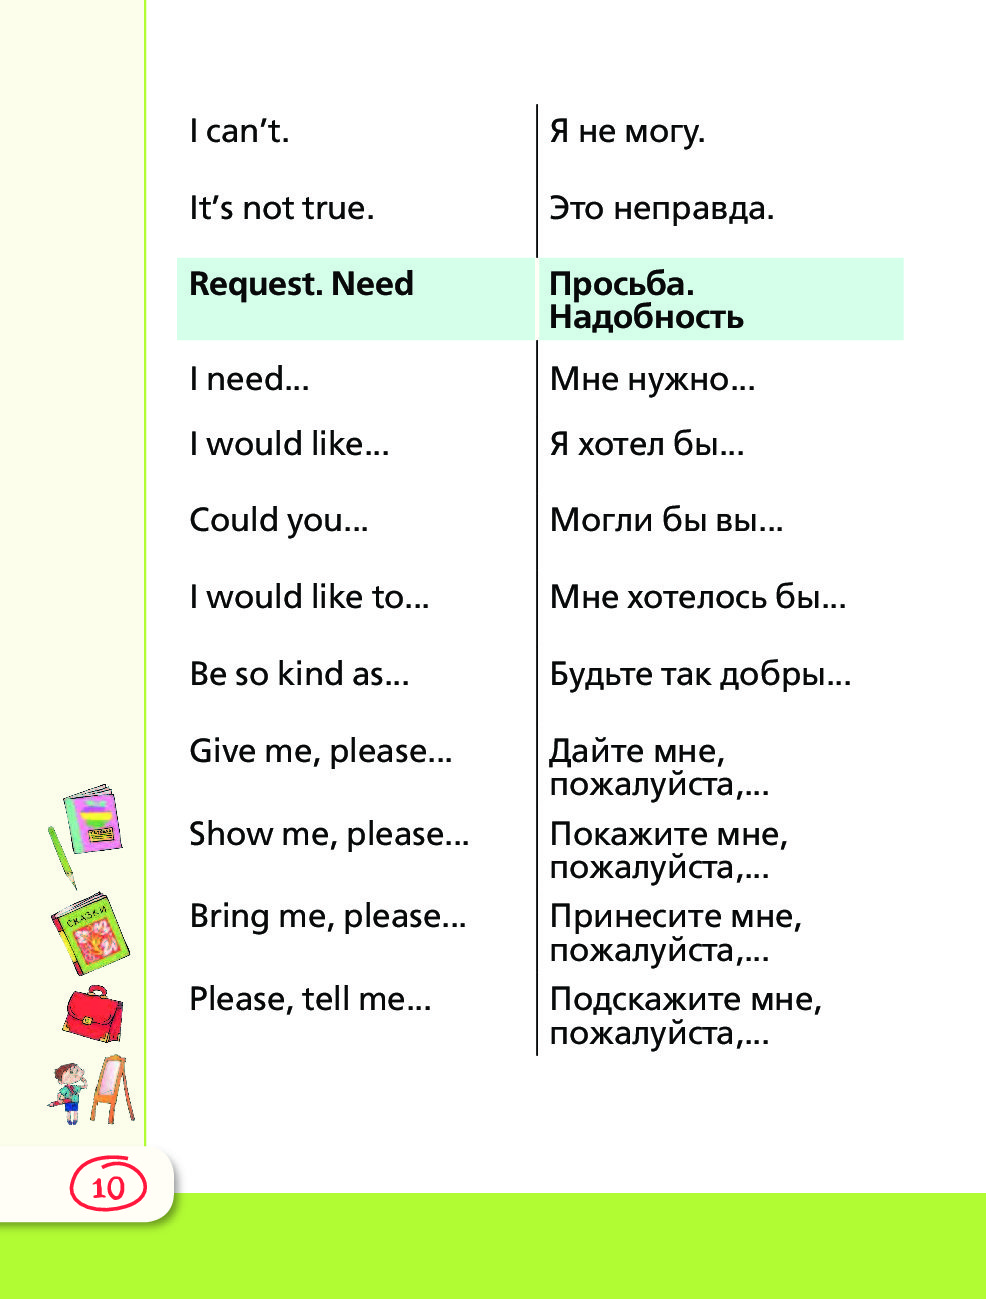 Транскрипция диалога. Диалоги на английском языке для начинающих. Пример диалога на английском языке с переводом. Диалоги по английскому языку для начинающих. Диалоги на английском языке с переводом для начинающих.